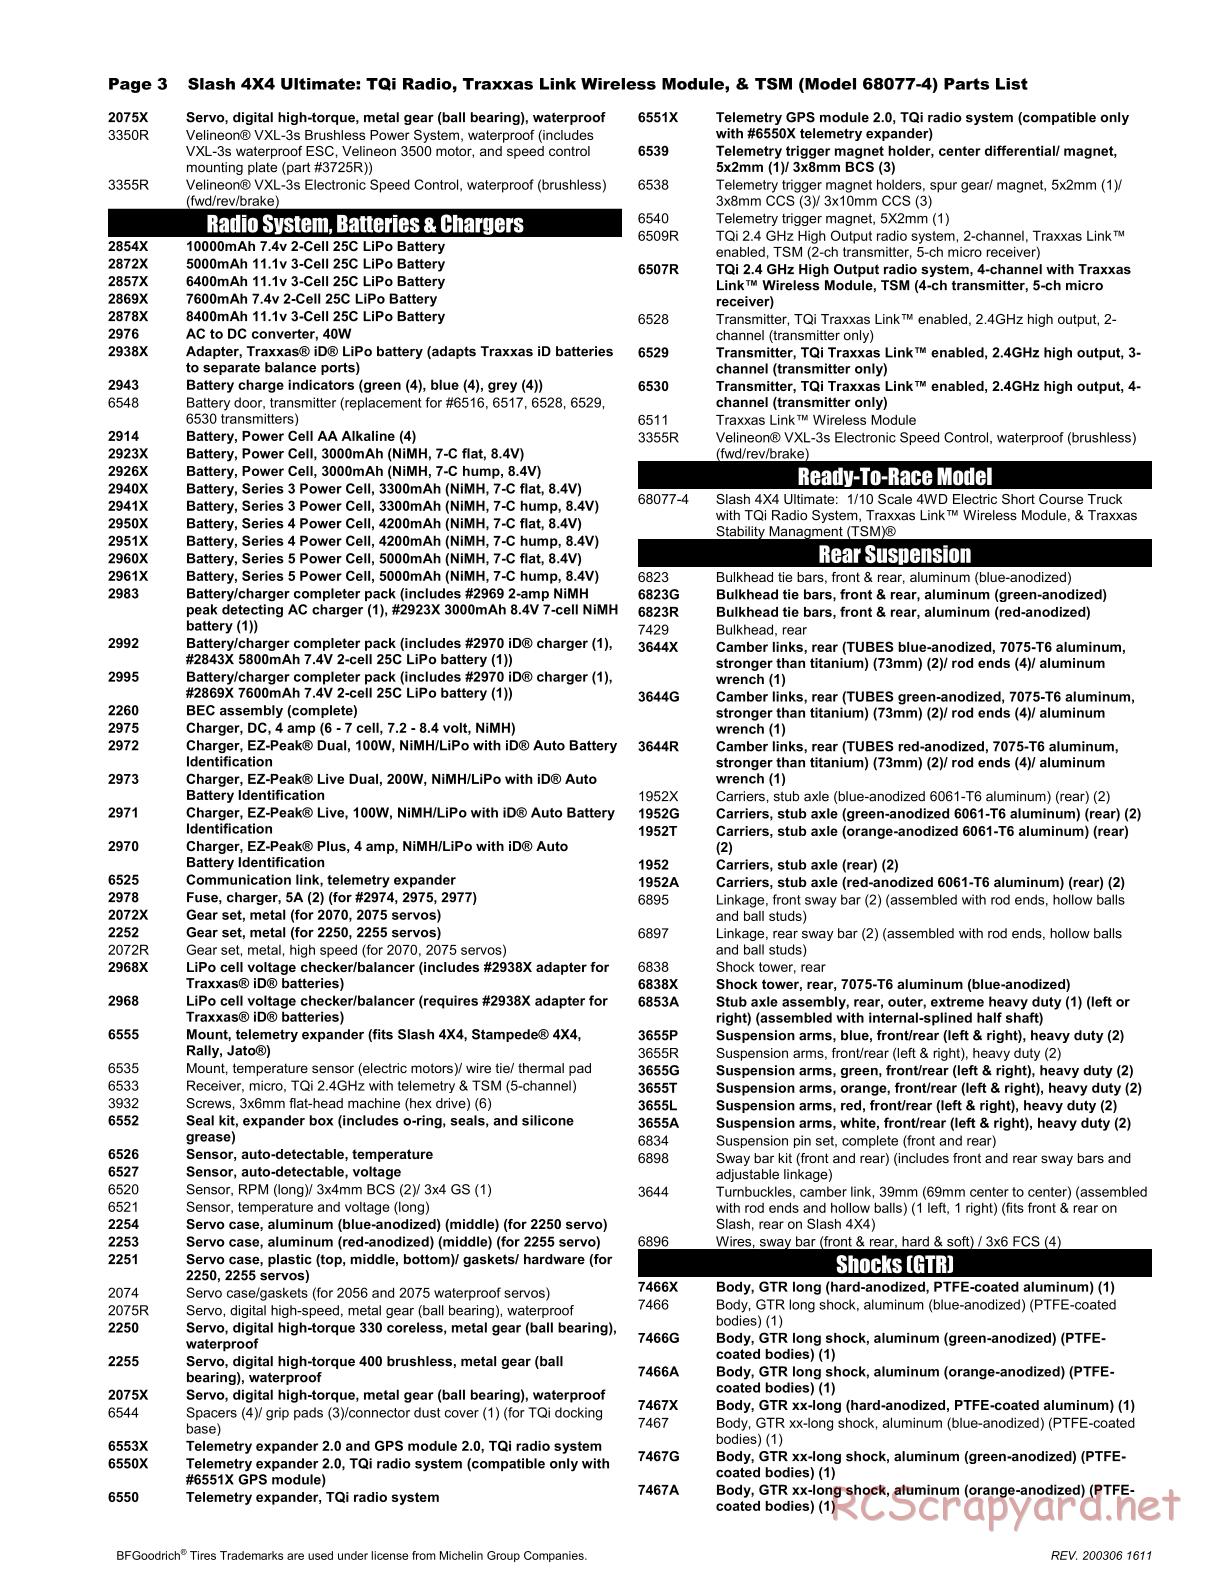 Traxxas - Slash 4x4 Ultimate TSM - Parts List - Page 3